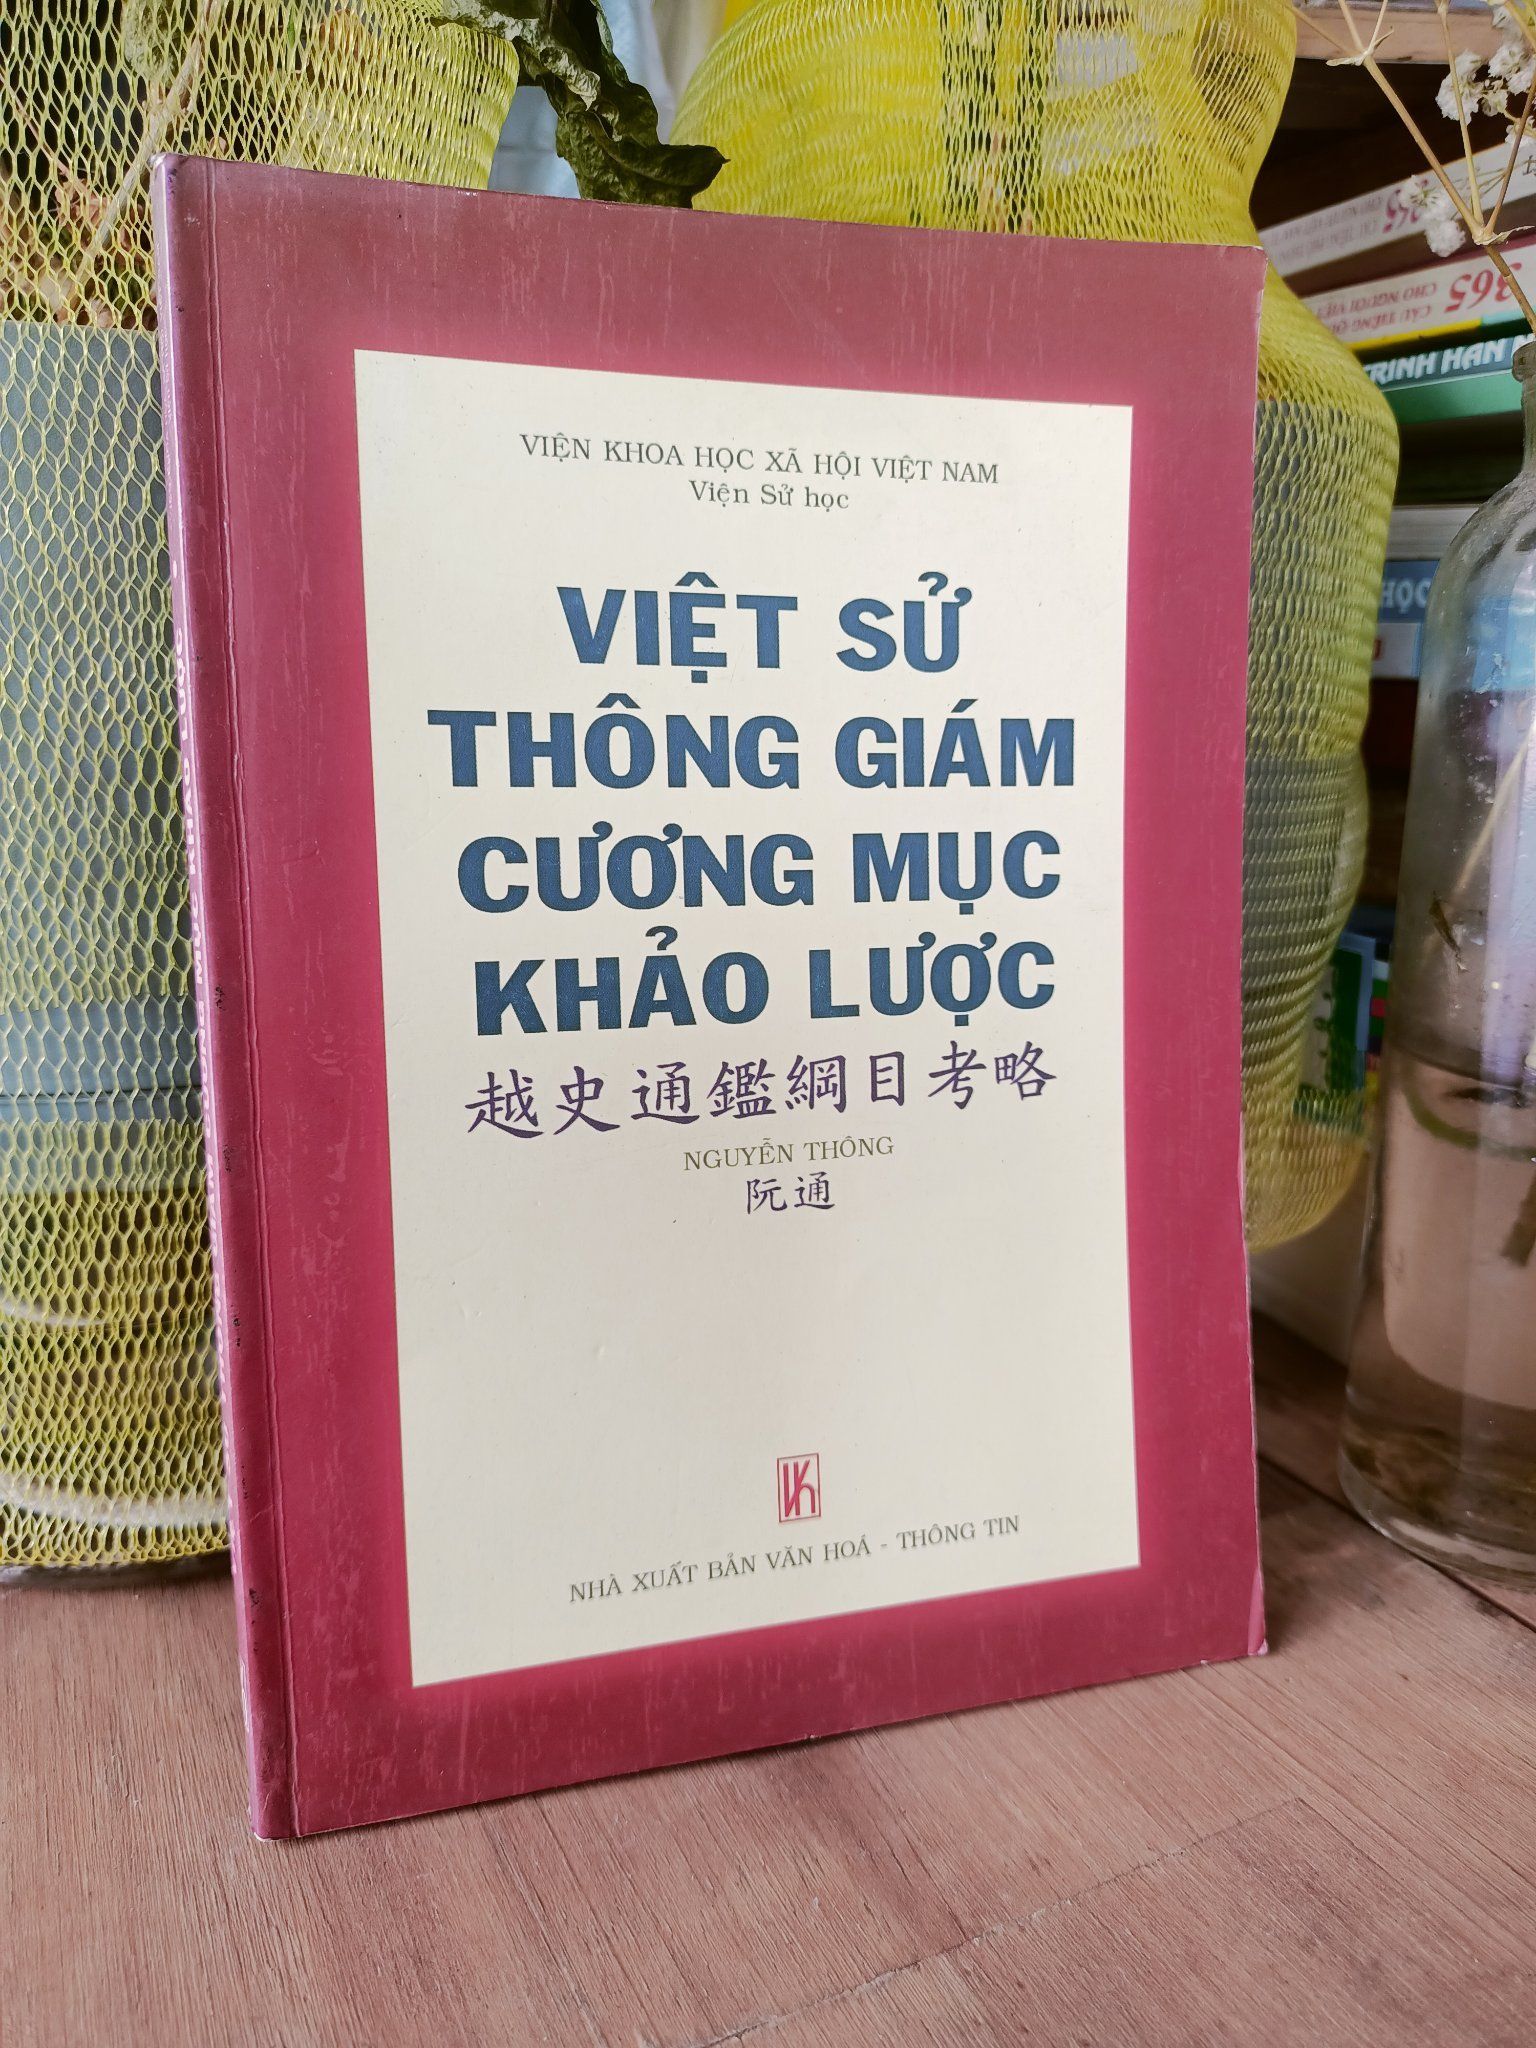  Việt sử thông giám cương mục khảo lược - Nguyễn Thông 